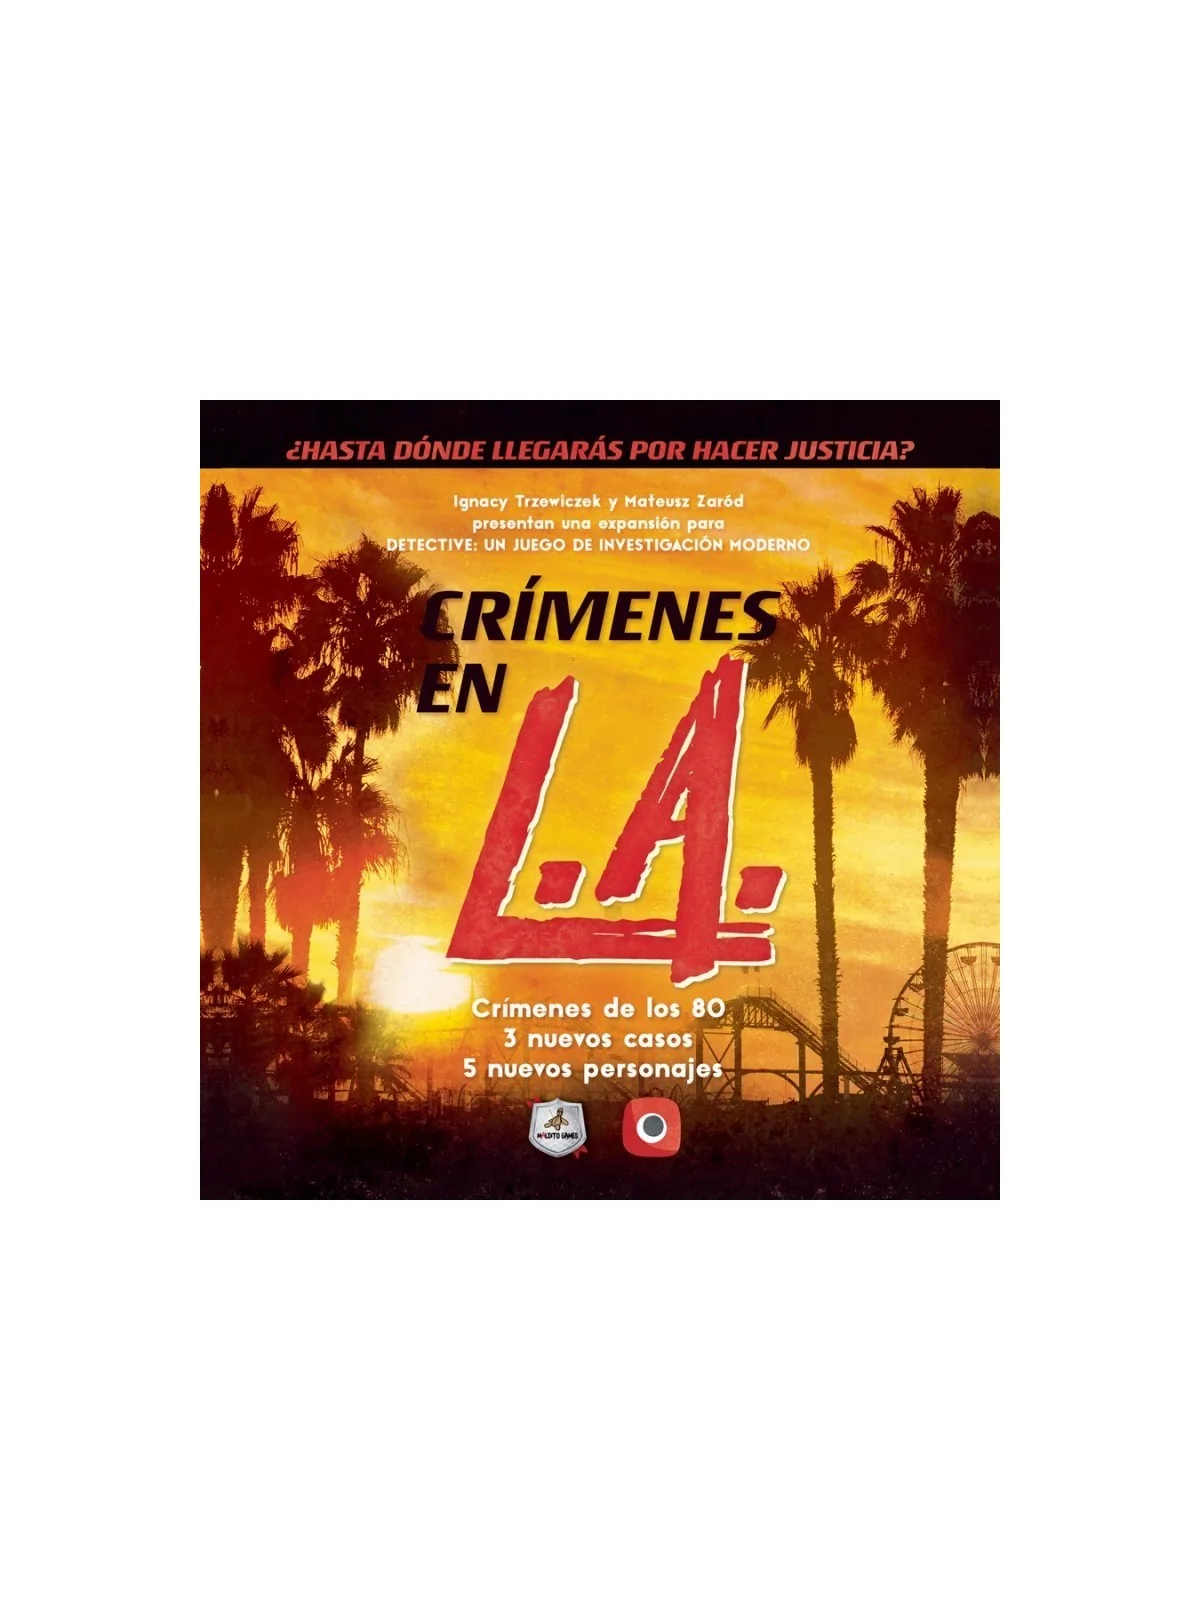 Comprar Detective: Crímenes en L.A. barato al mejor precio 22,50 € de 